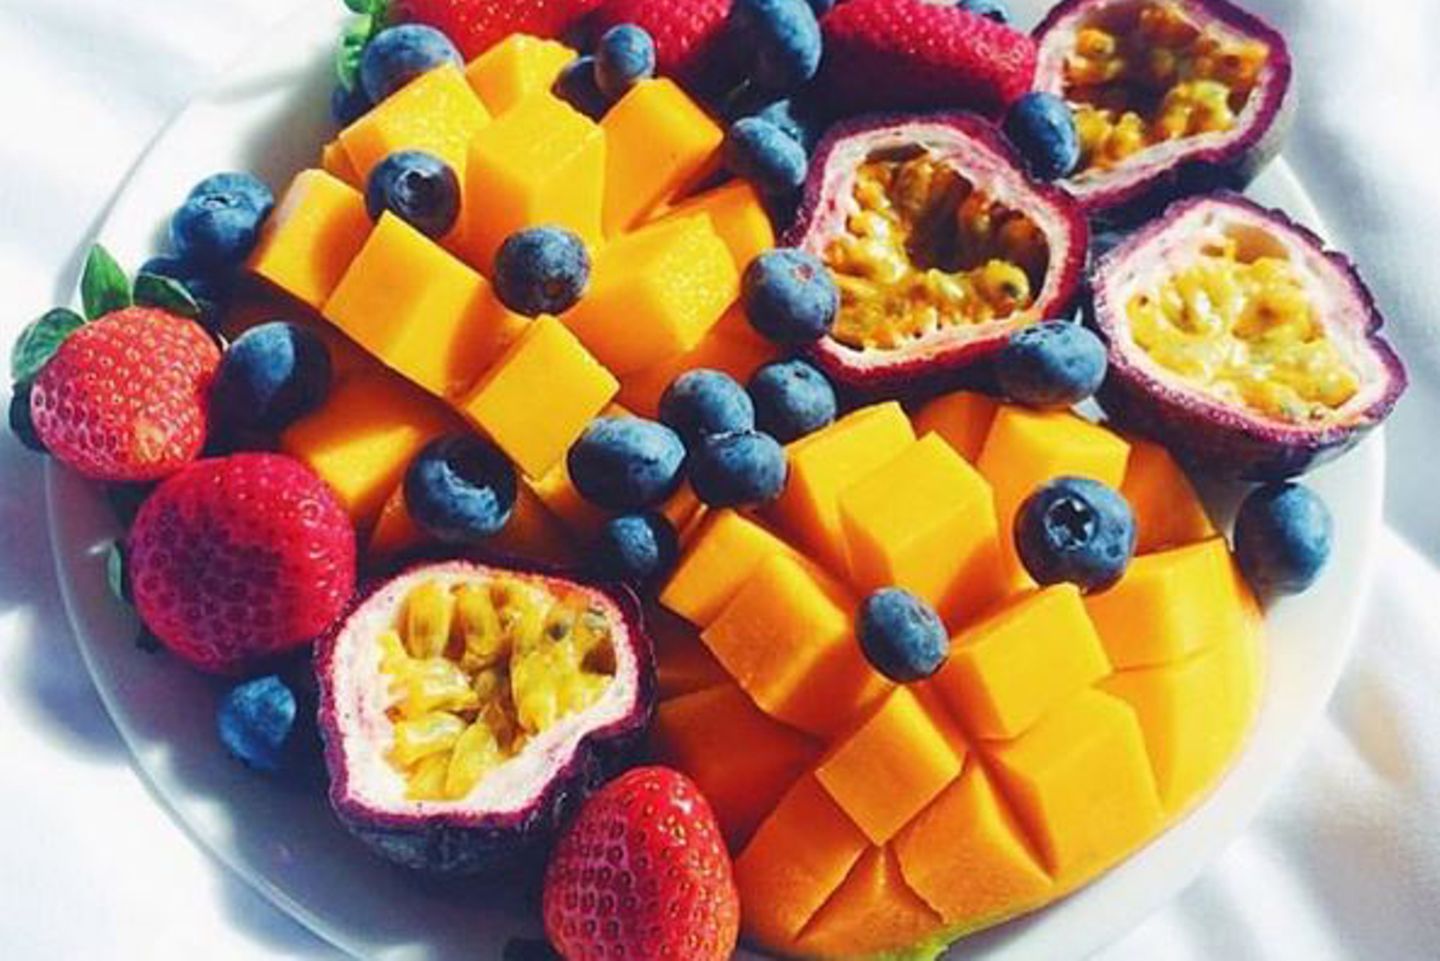 Die Vitambombe für zwischendurch: Mangos, Erdbeeren, Blaubeeren oder exotische Früchte sind ein gesunder und leckerer Snack.